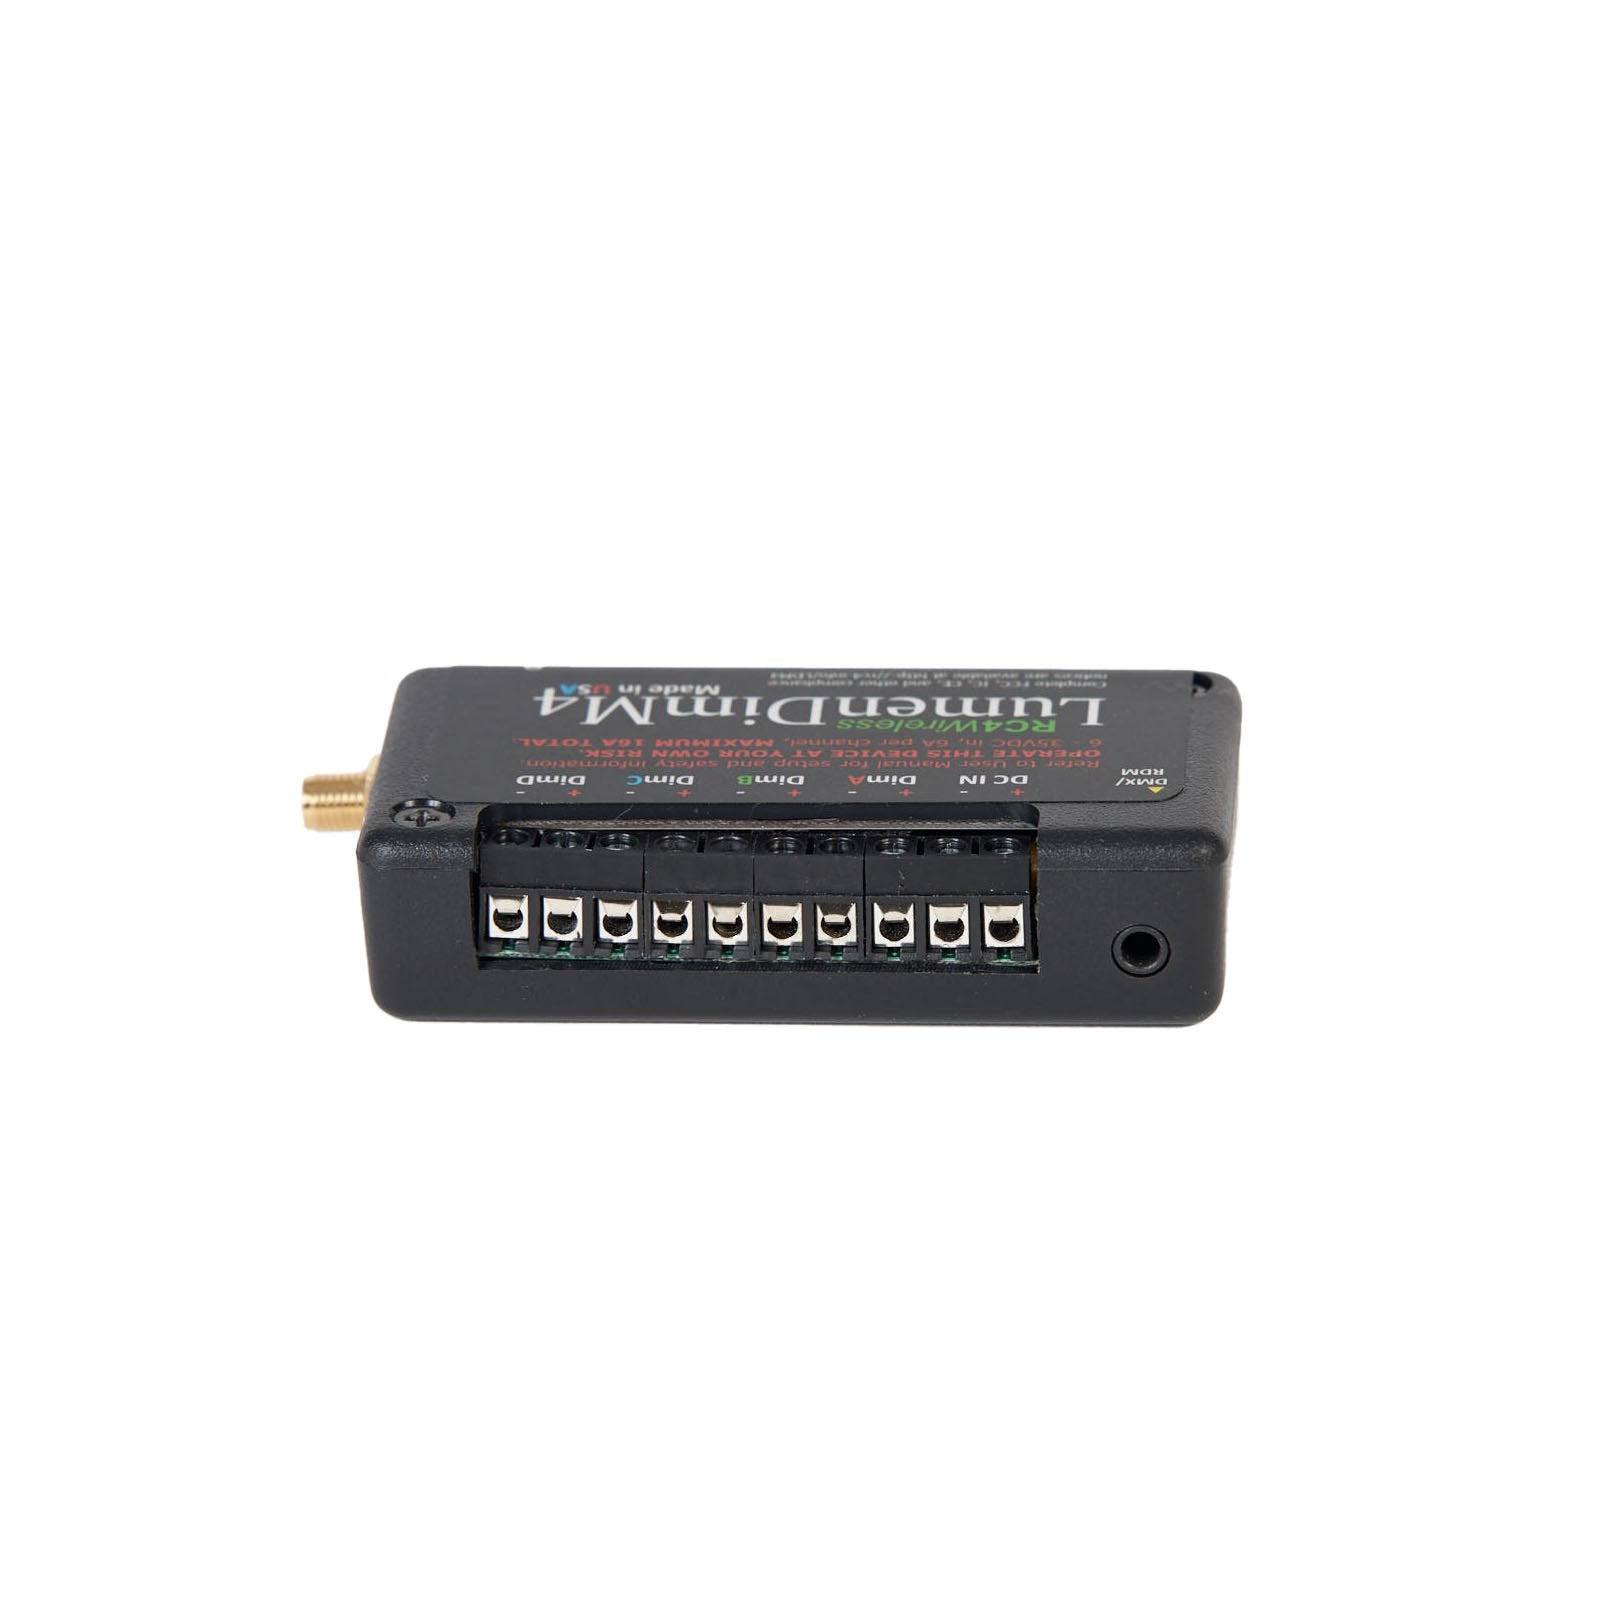 LumenDimM4 - Miniature 4 Channel CRMX Wireless Dimmer